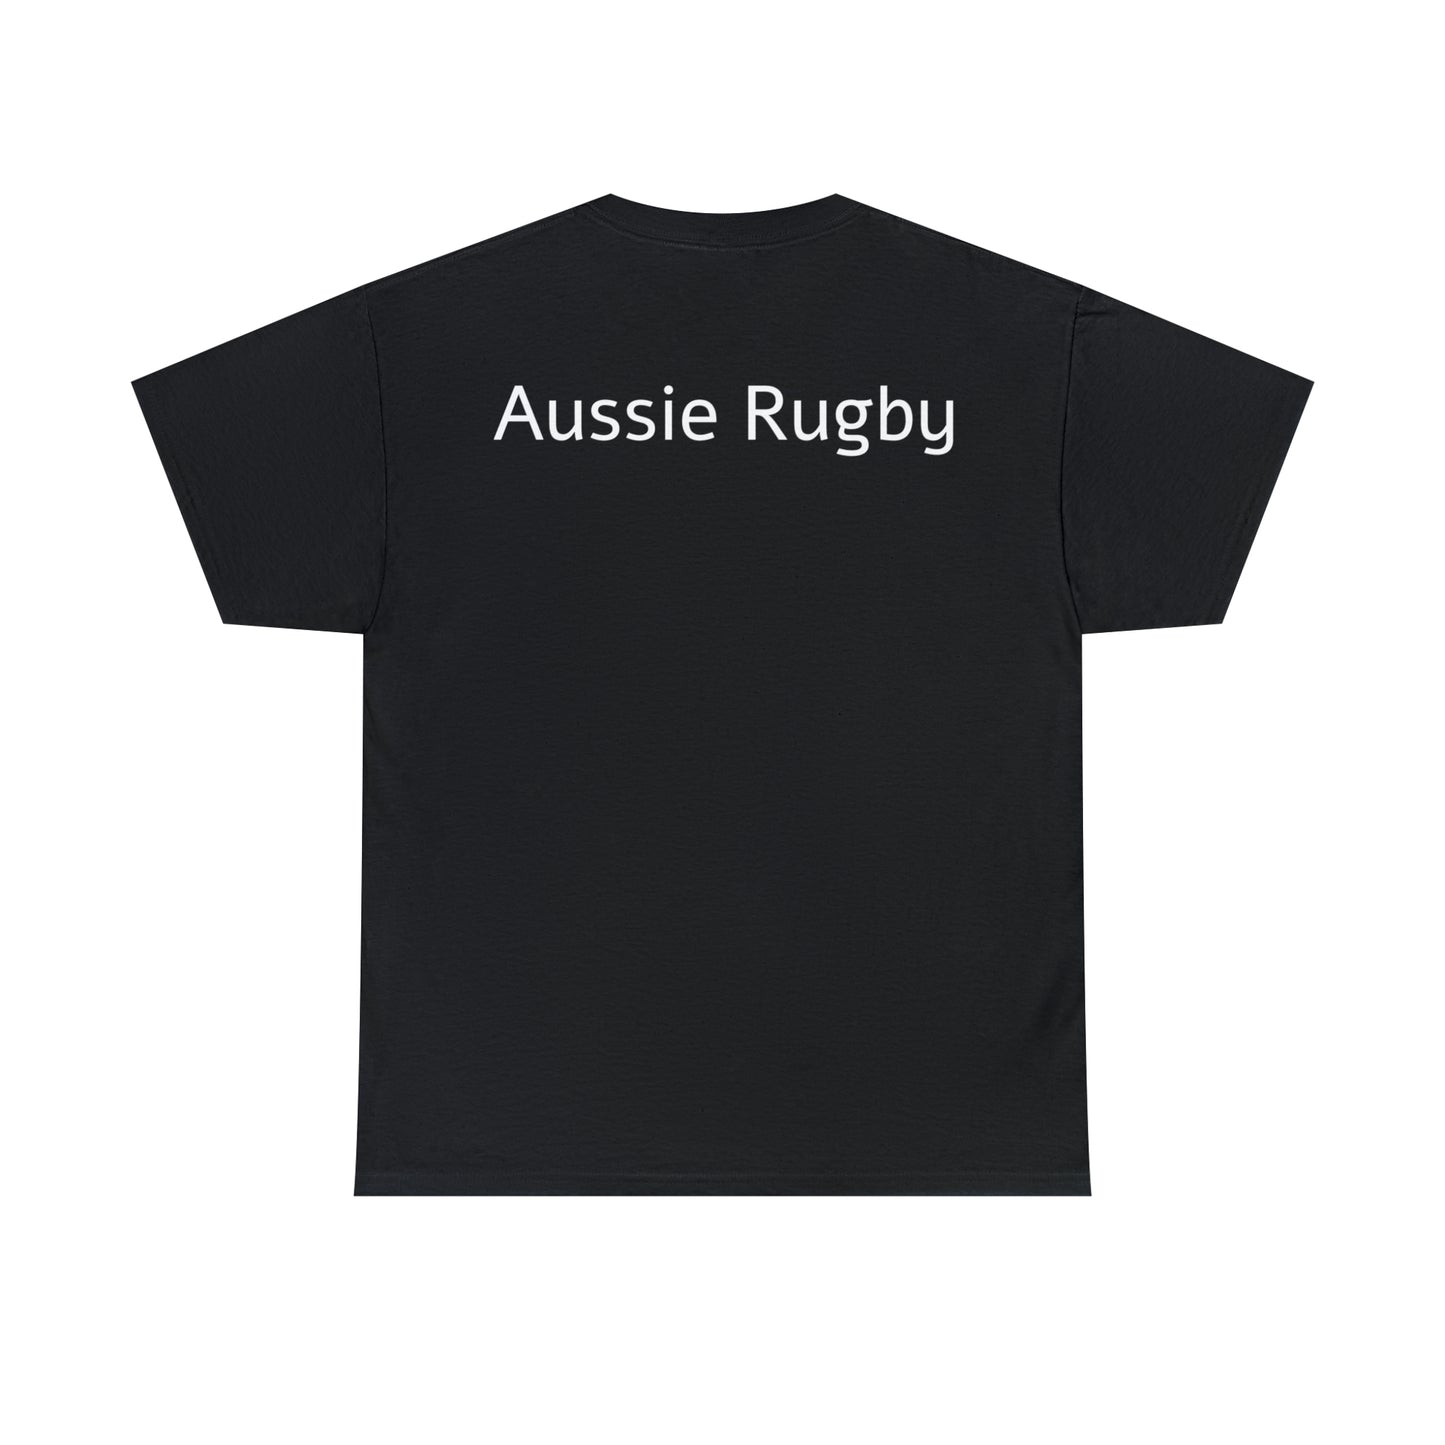 Australia lifting RWC - black shirt